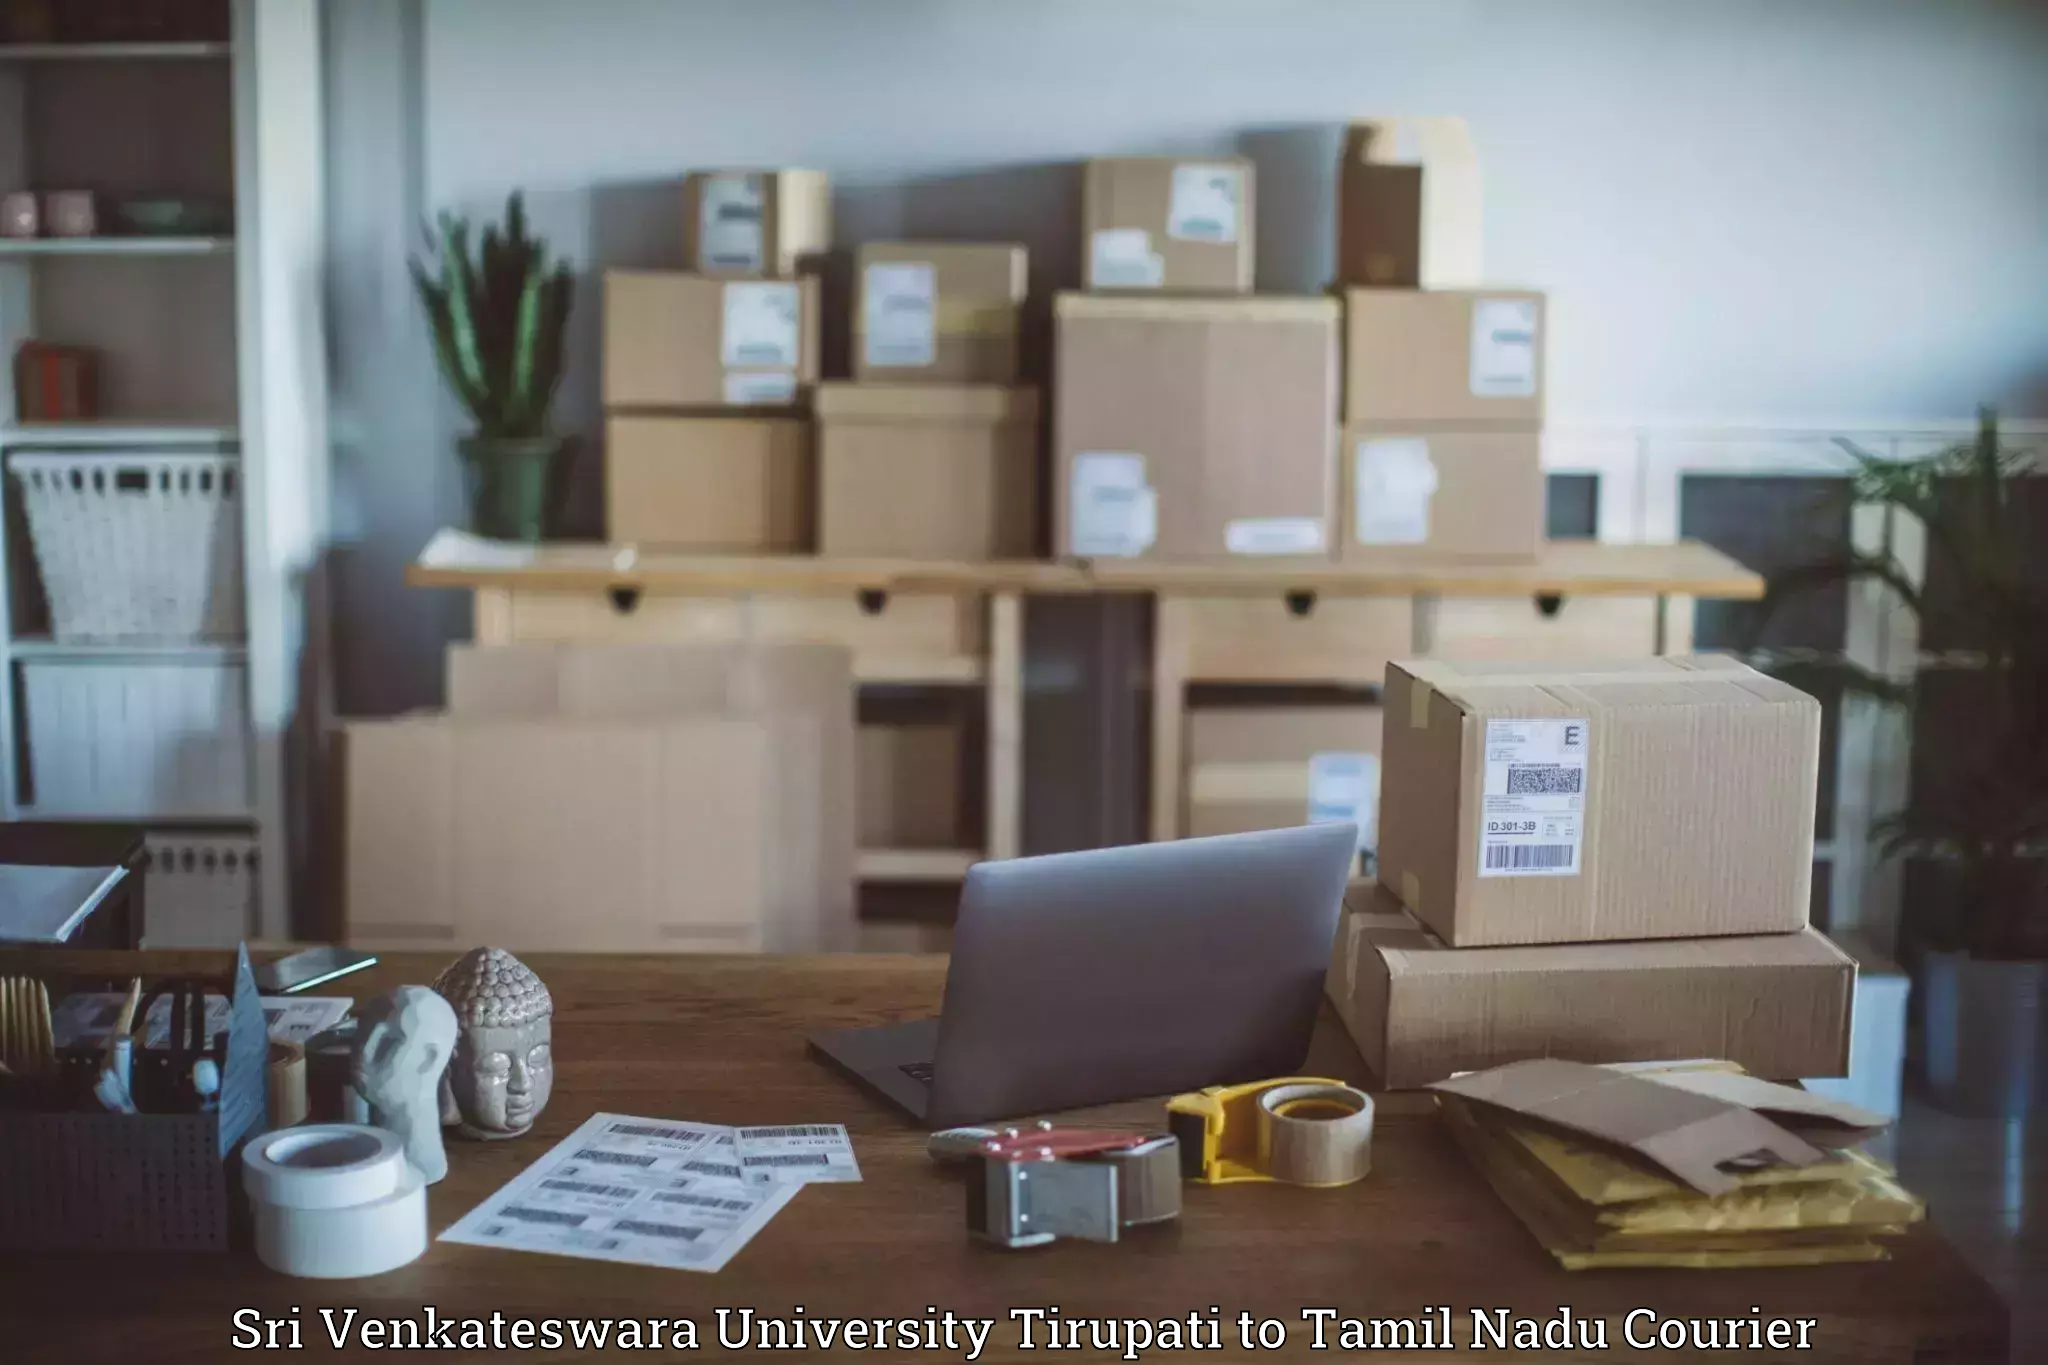 Courier service efficiency Sri Venkateswara University Tirupati to Tamil Nadu